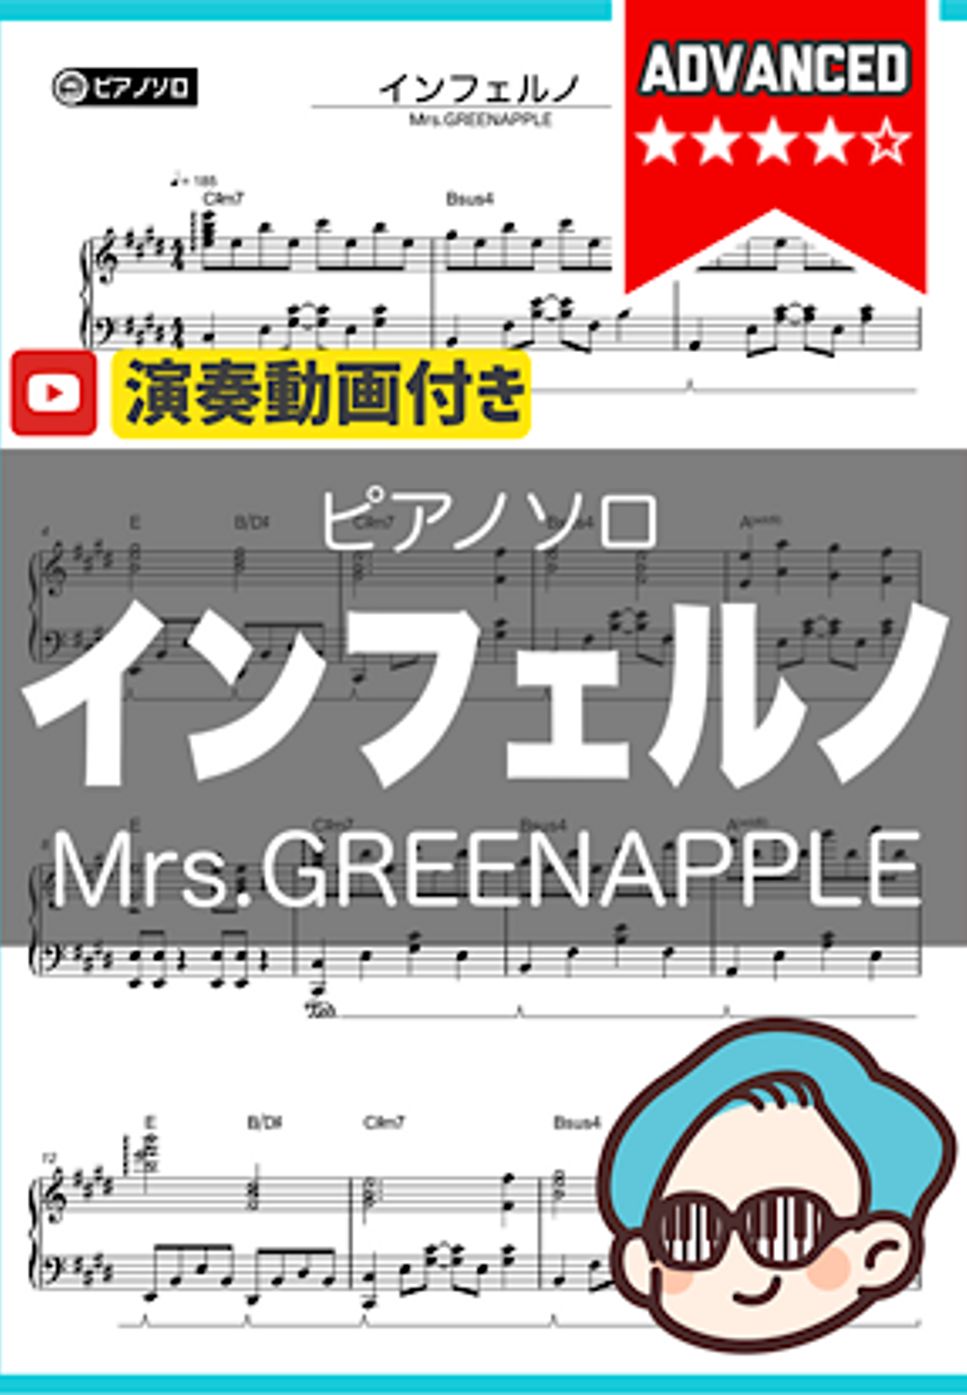 Mrs.GREENAPPLE - インフェルノ by シータピアノ